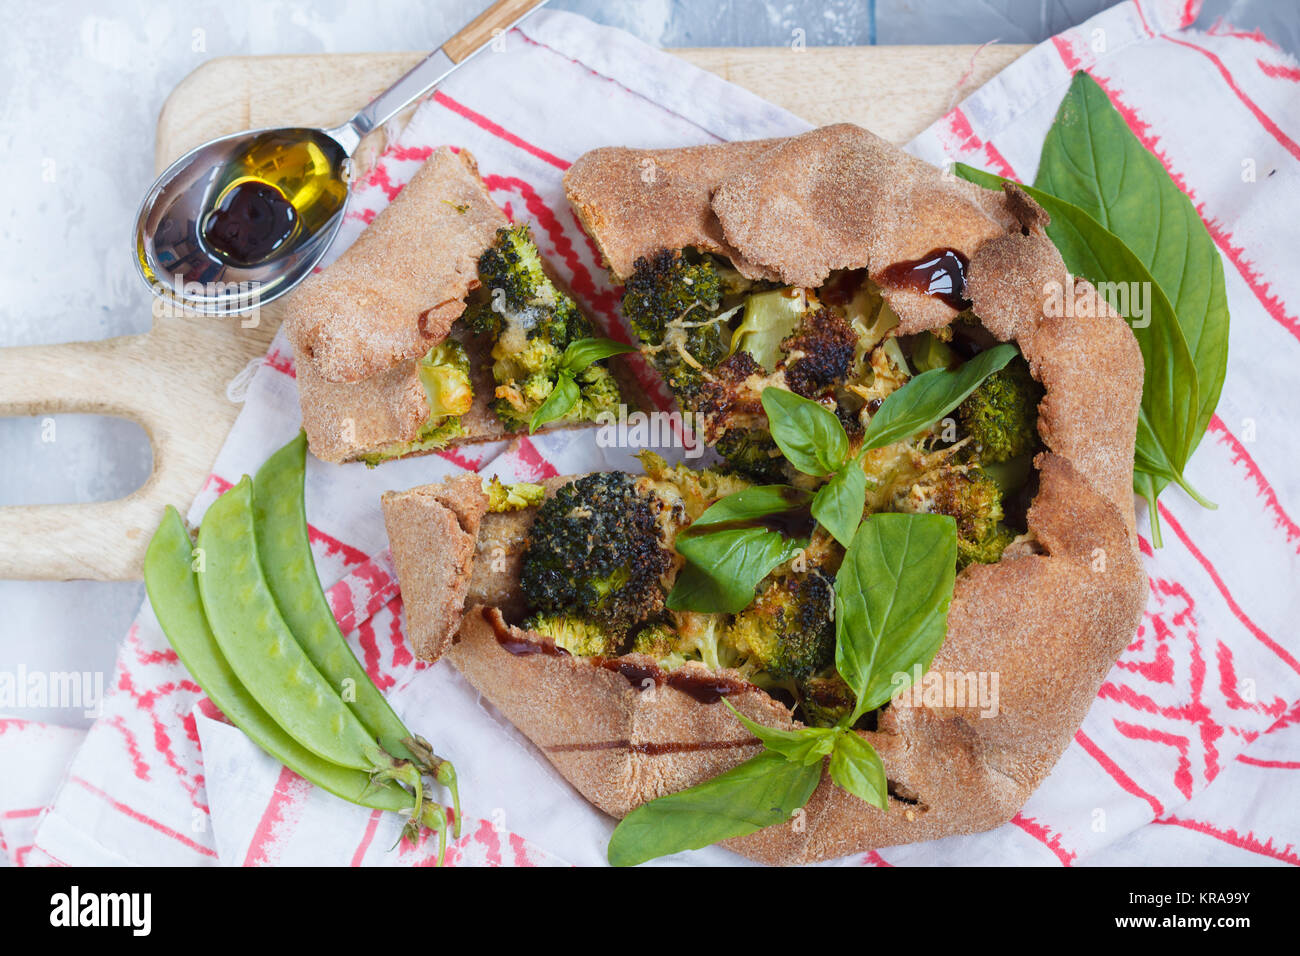 Vegetarische Crostata oder Galette mit Brokkoli, Erbsen, Basilikum und Balsamico. Gesunde vegane Ernährung Konzept. Stockfoto